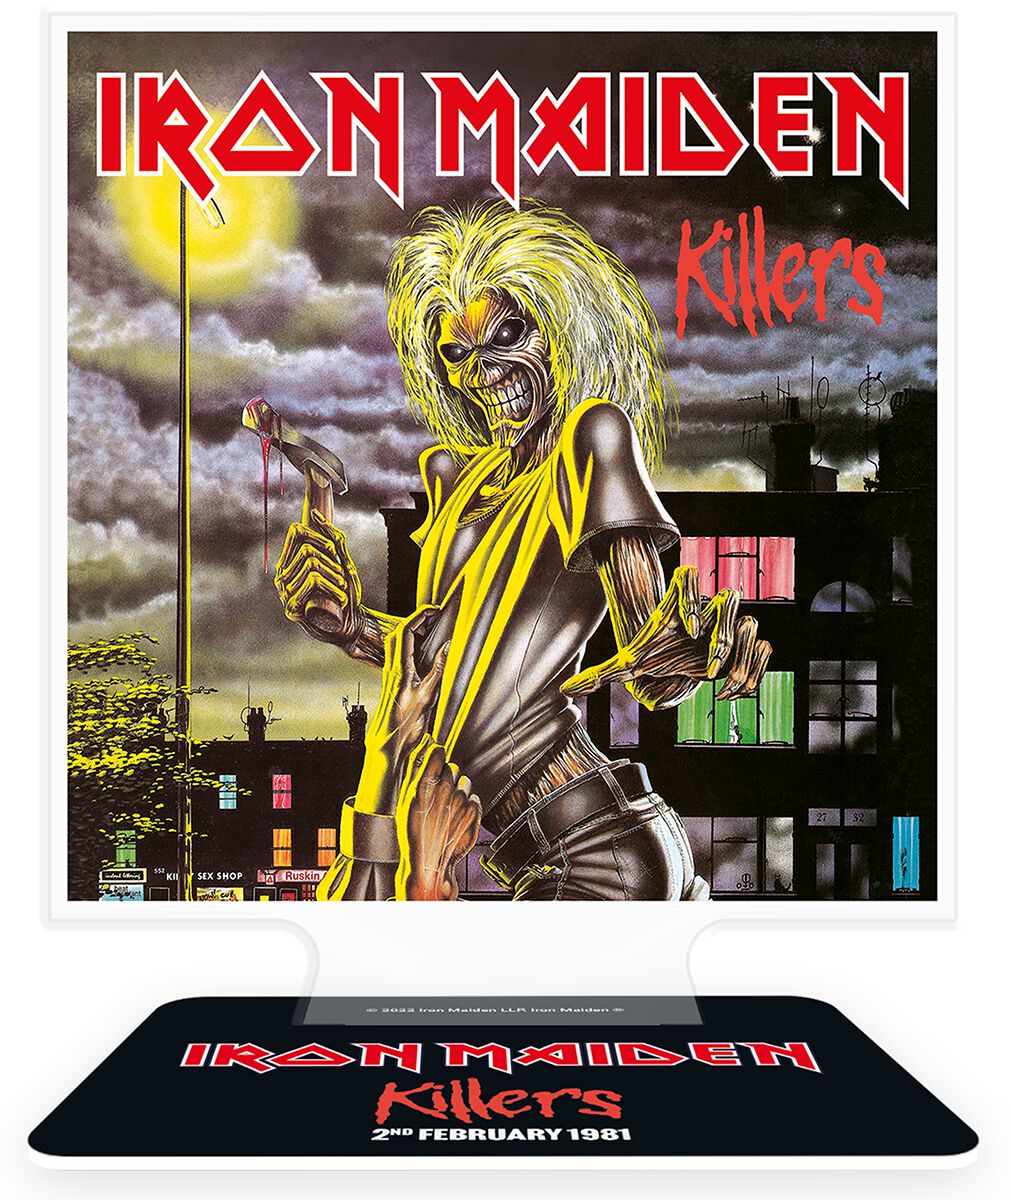 Iron Maiden Sammelfiguren - Killers   - Lizenziertes Merchandise!